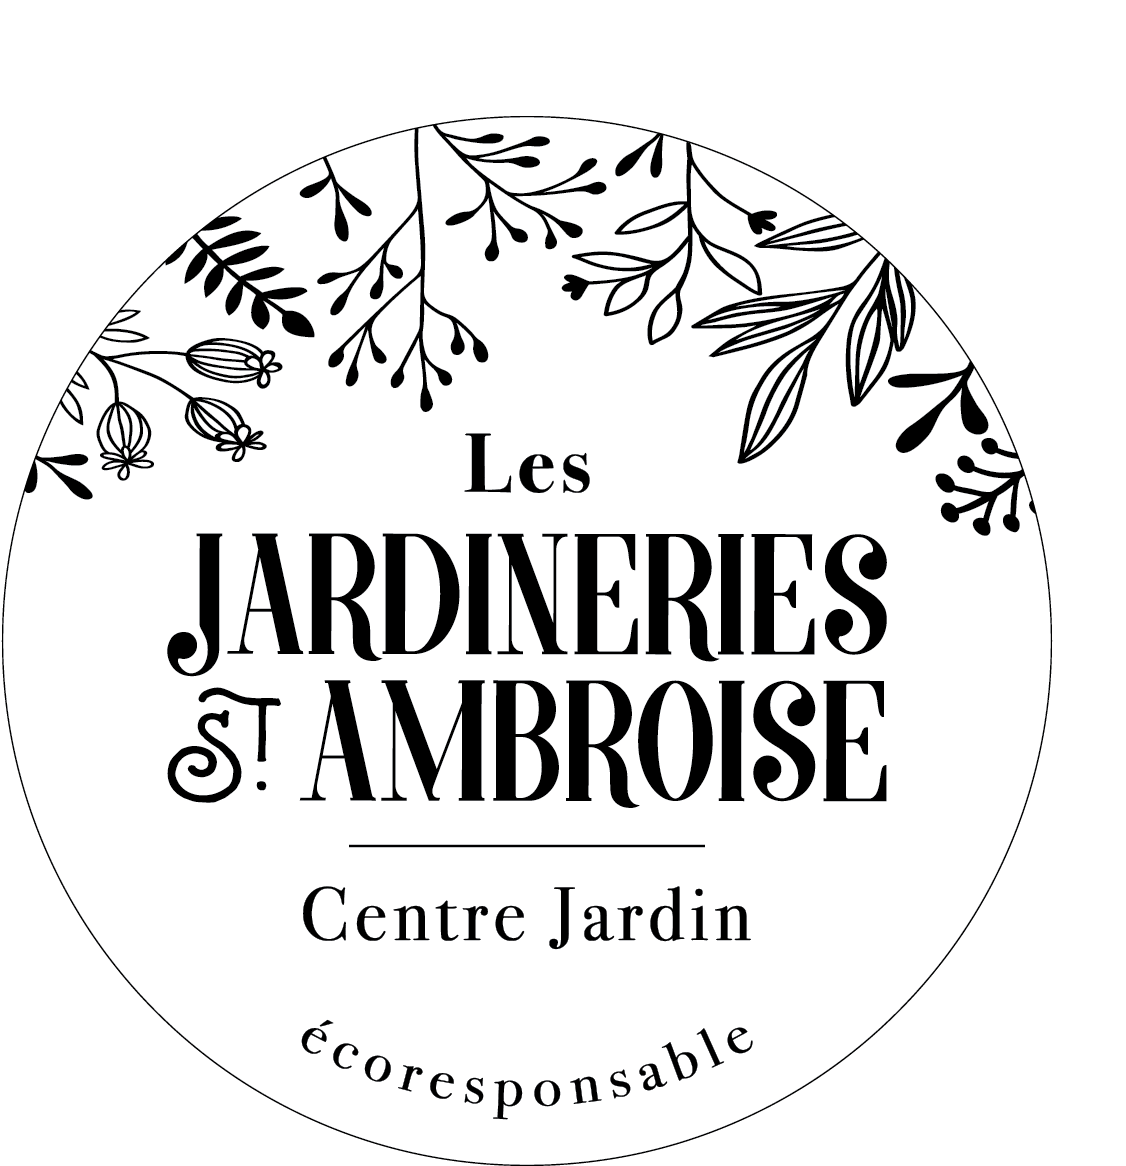 Les Jardineries St